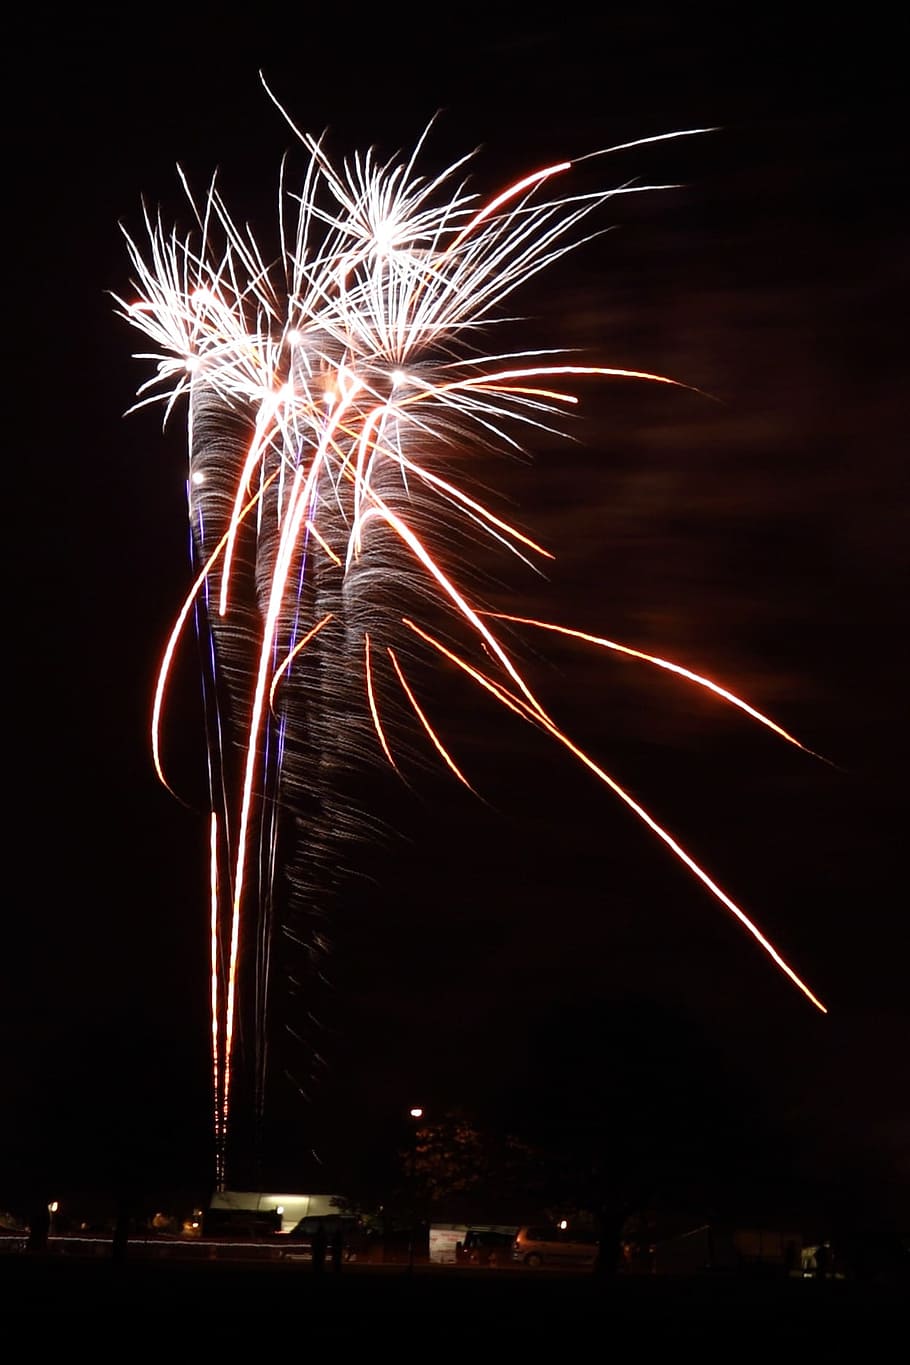 Fogos de artifício, fogueira, novo, ano, celebração, luz, efeito, exibição de fogos de artifício, fogo de artifício - objeto artificial, noite